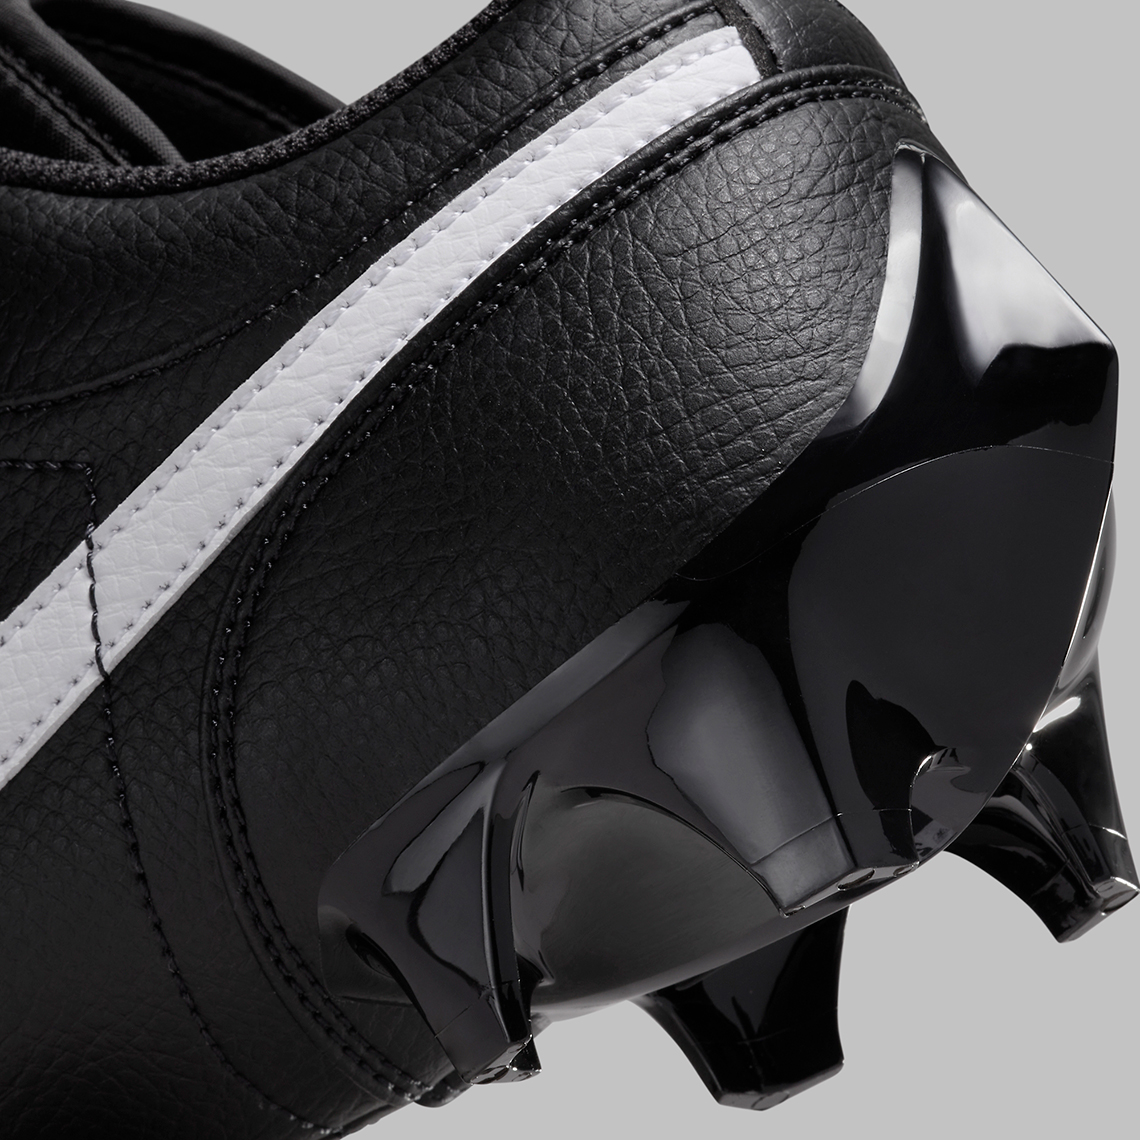 Fabolous Supreme x Air Jordan 5 Camo x Amare Stoudemire Nike Cortez Cleats Black White Fj6245 001 8